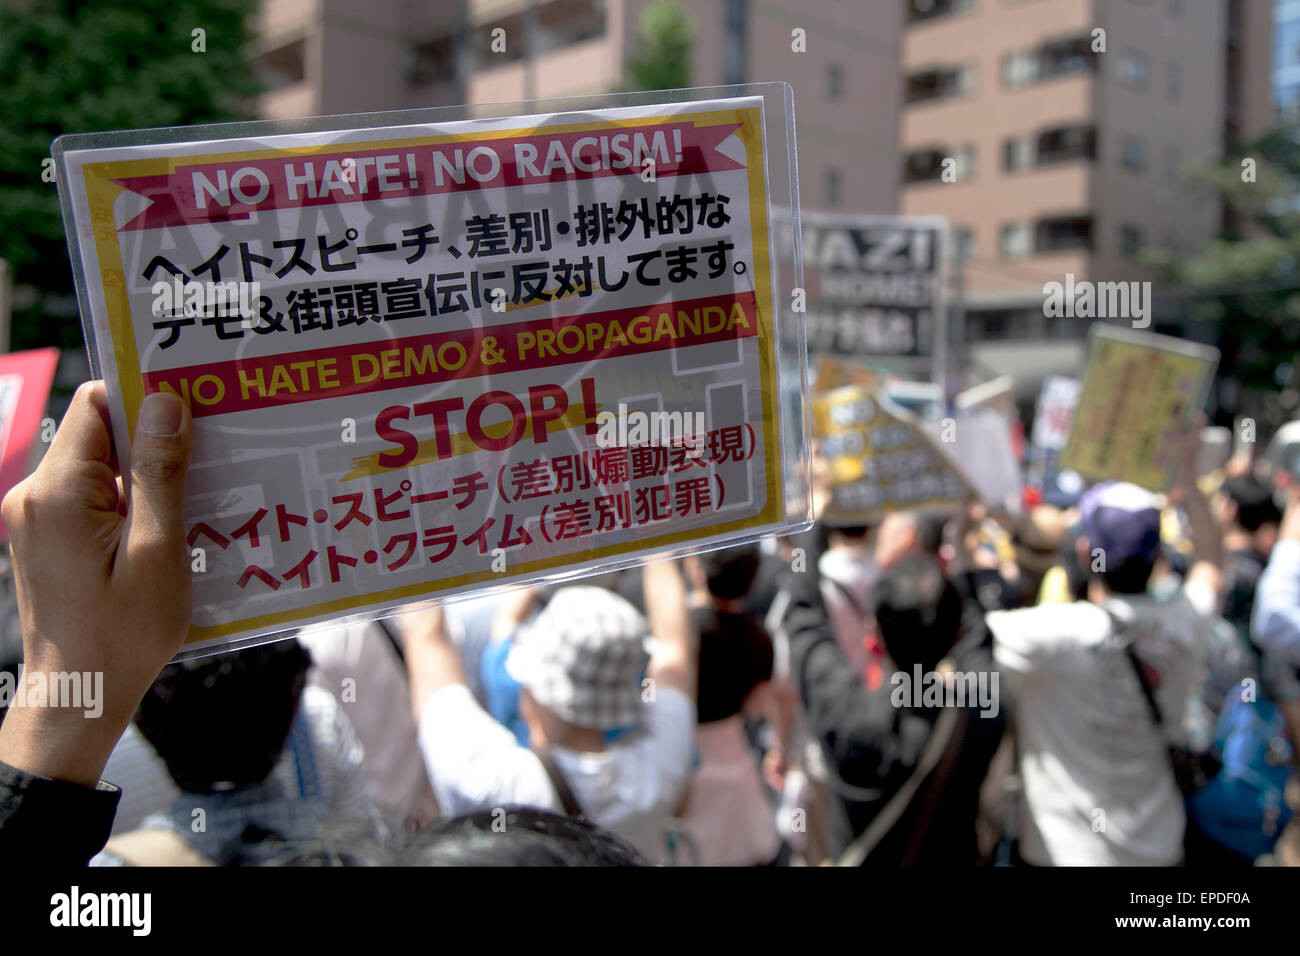 Tokio, Japón. 17 de mayo de 2015. Antirracistas enfrentamiento con los miembros de la NPO Houjin Gaikokujin Hanzai Tsuiho deshacer (el Movimiento para eliminar los crímenes por extranjeros) en el distrito de Akihabara el 17 de mayo de 2015, Tokio, Japón. Más de un centenar de activistas antirracistas protestaron contra una manifestación por el ala derecha NPO celebrada el 17 de mayo, alrededor de las calles de Akihabara. Crédito: Aflo Co., Ltd./Alamy Live News Foto de stock